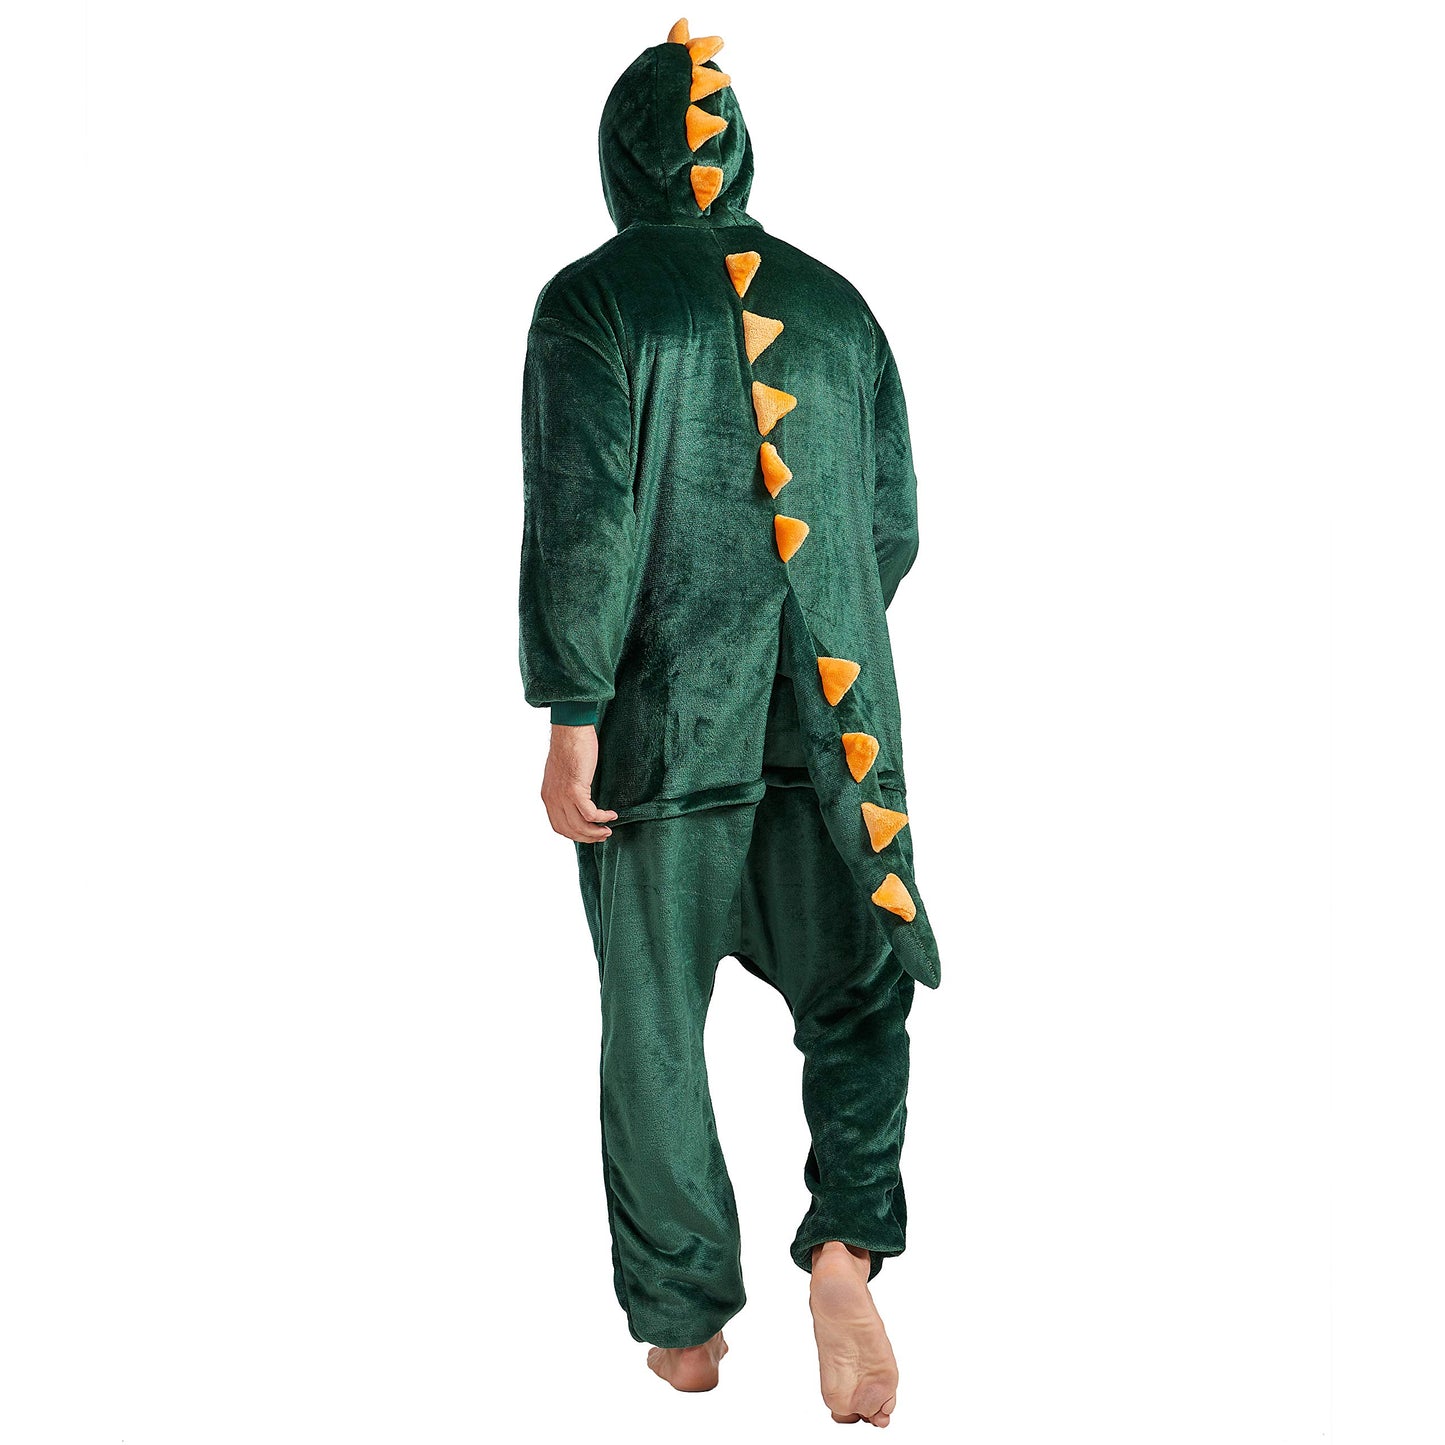 Afoxsos Adult Animal Pajamas Costume - Plush One Piece Cosplay Dinosaur Onesies Costume